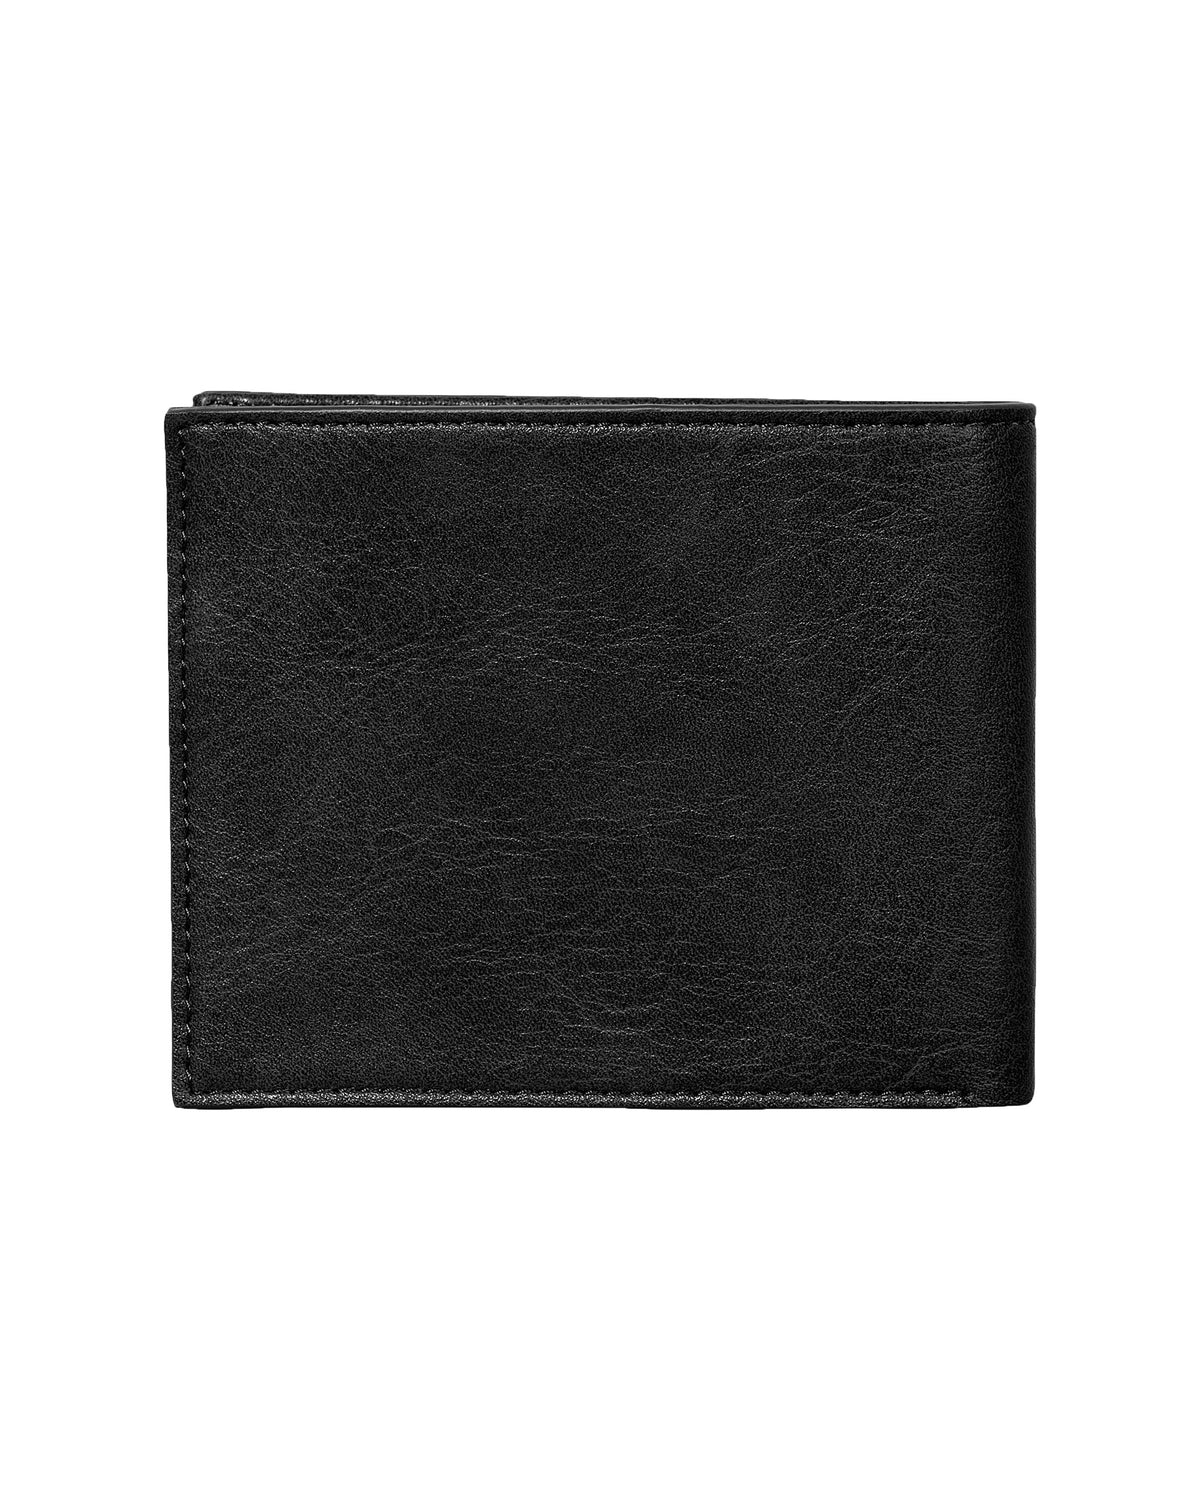 Carhartt Wip Card Wallet Black